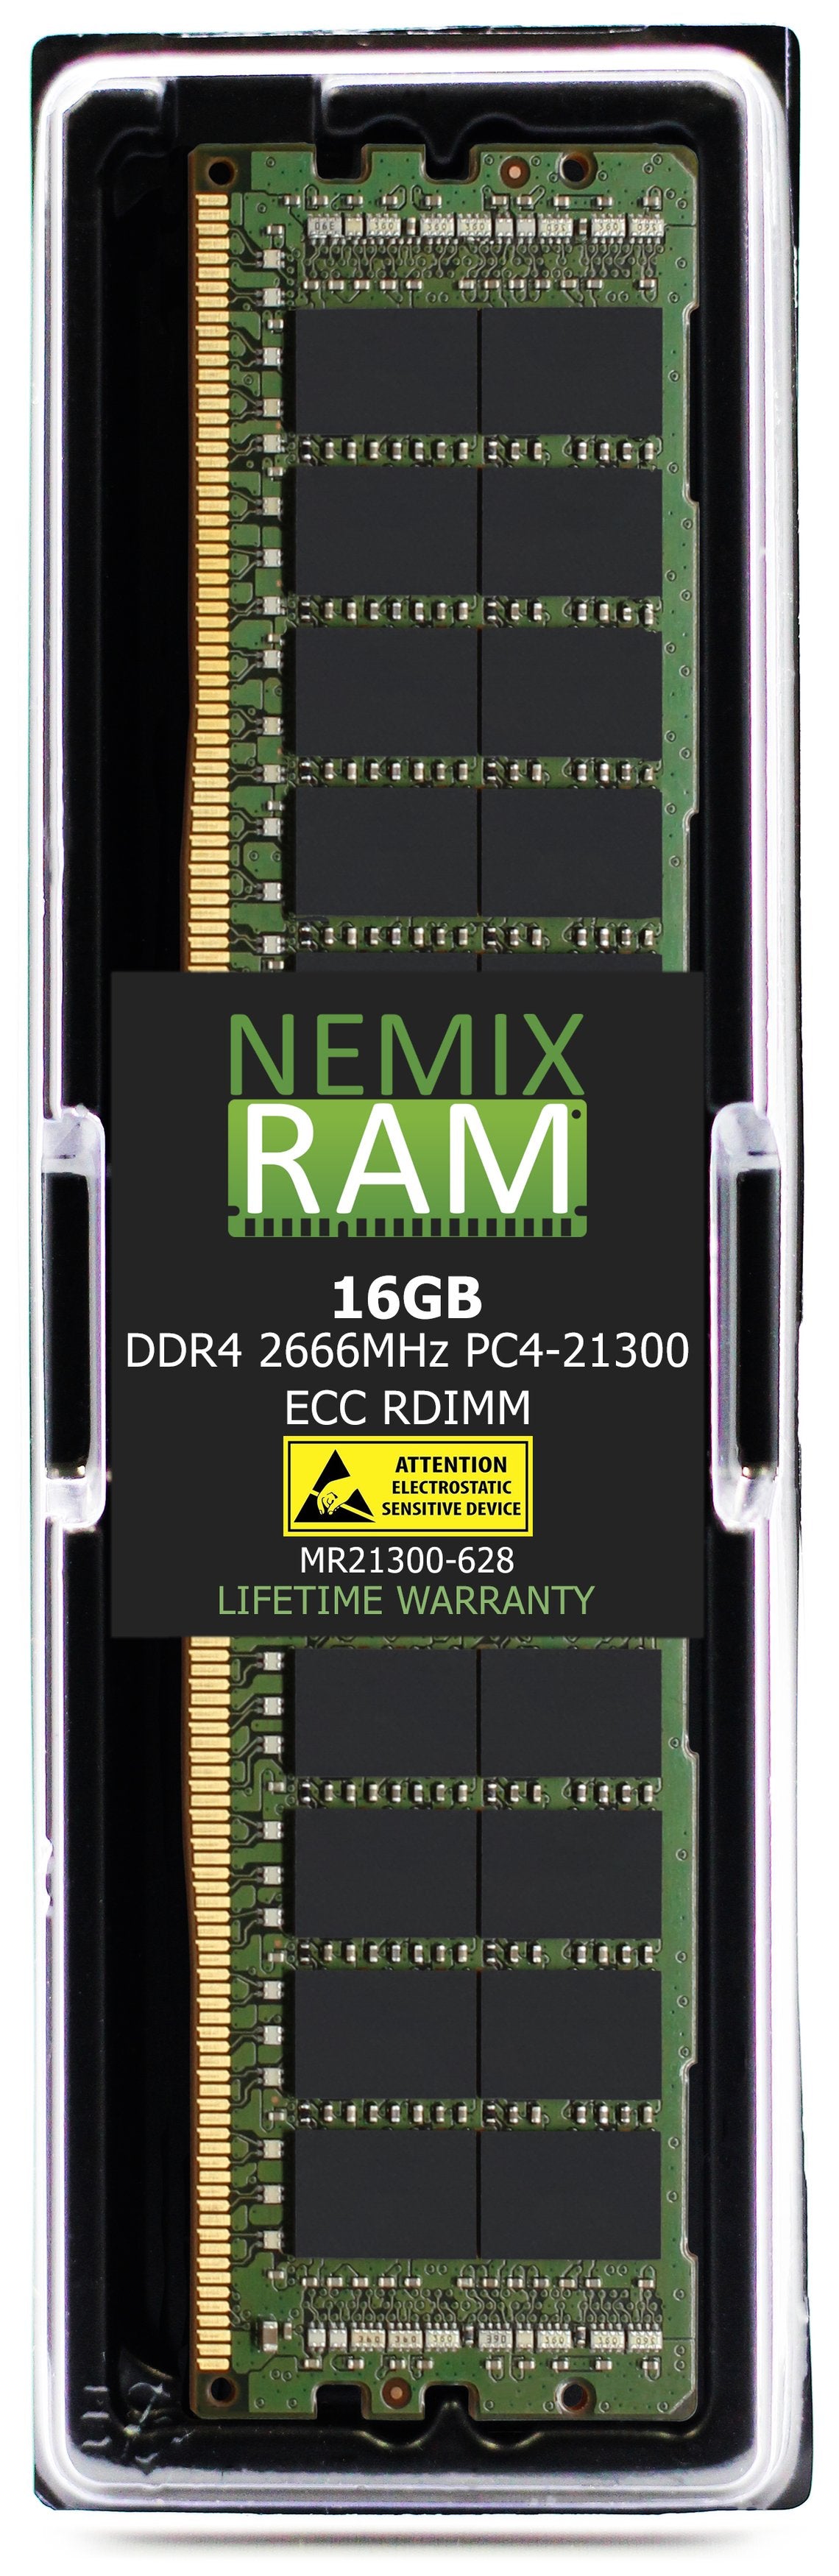 16GB DDR4 2666MHZ PC4-21300 RDIMM Compatible with Supermicro MEM-DR416L-CL06-ER26